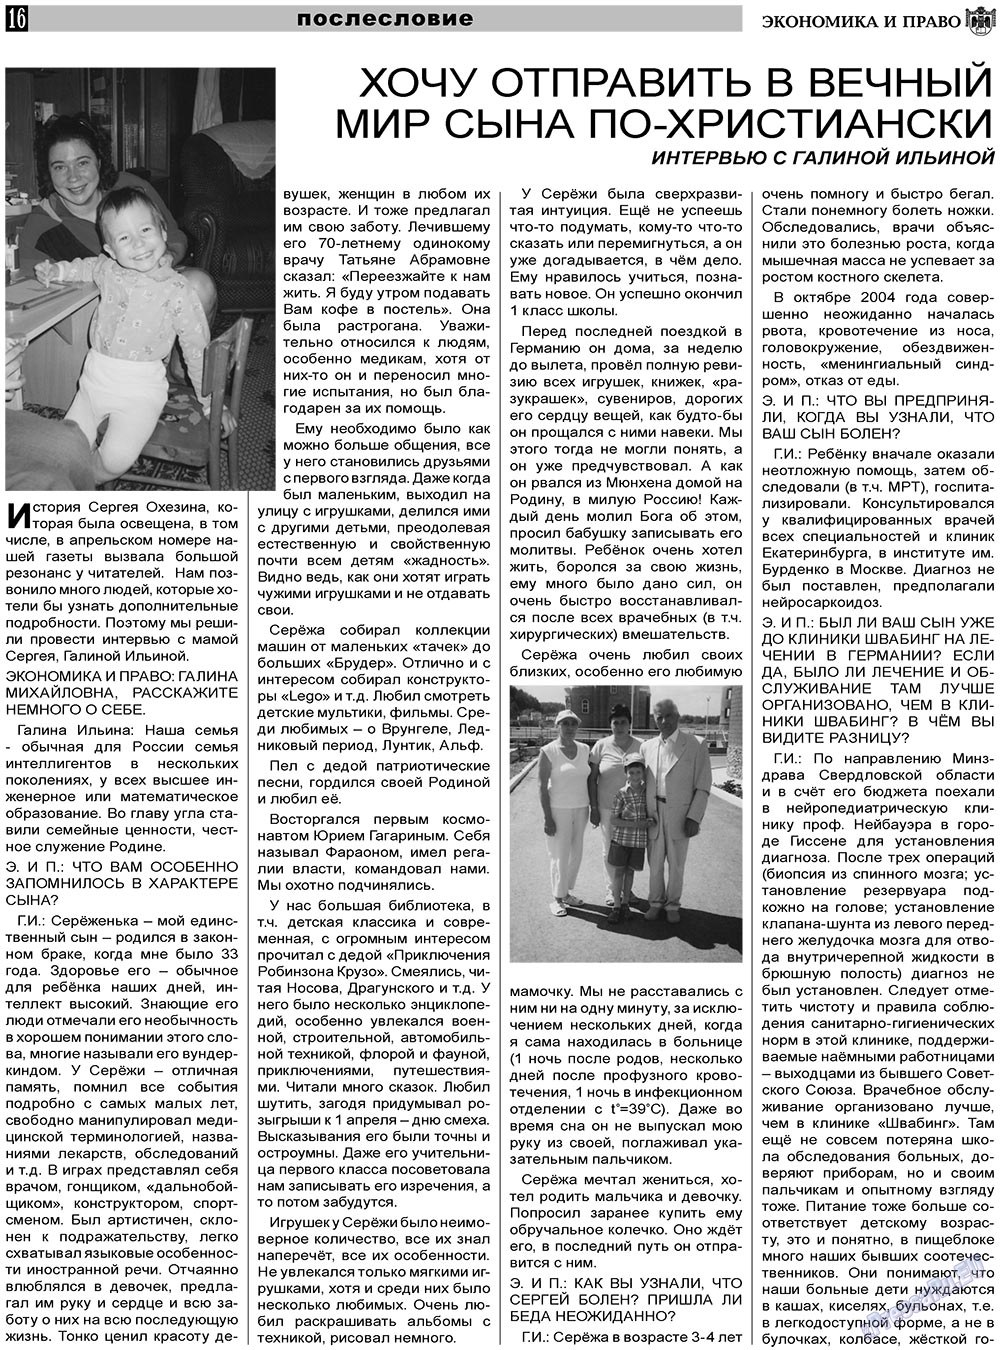 Экономика и право, газета. 2011 №5 стр.16